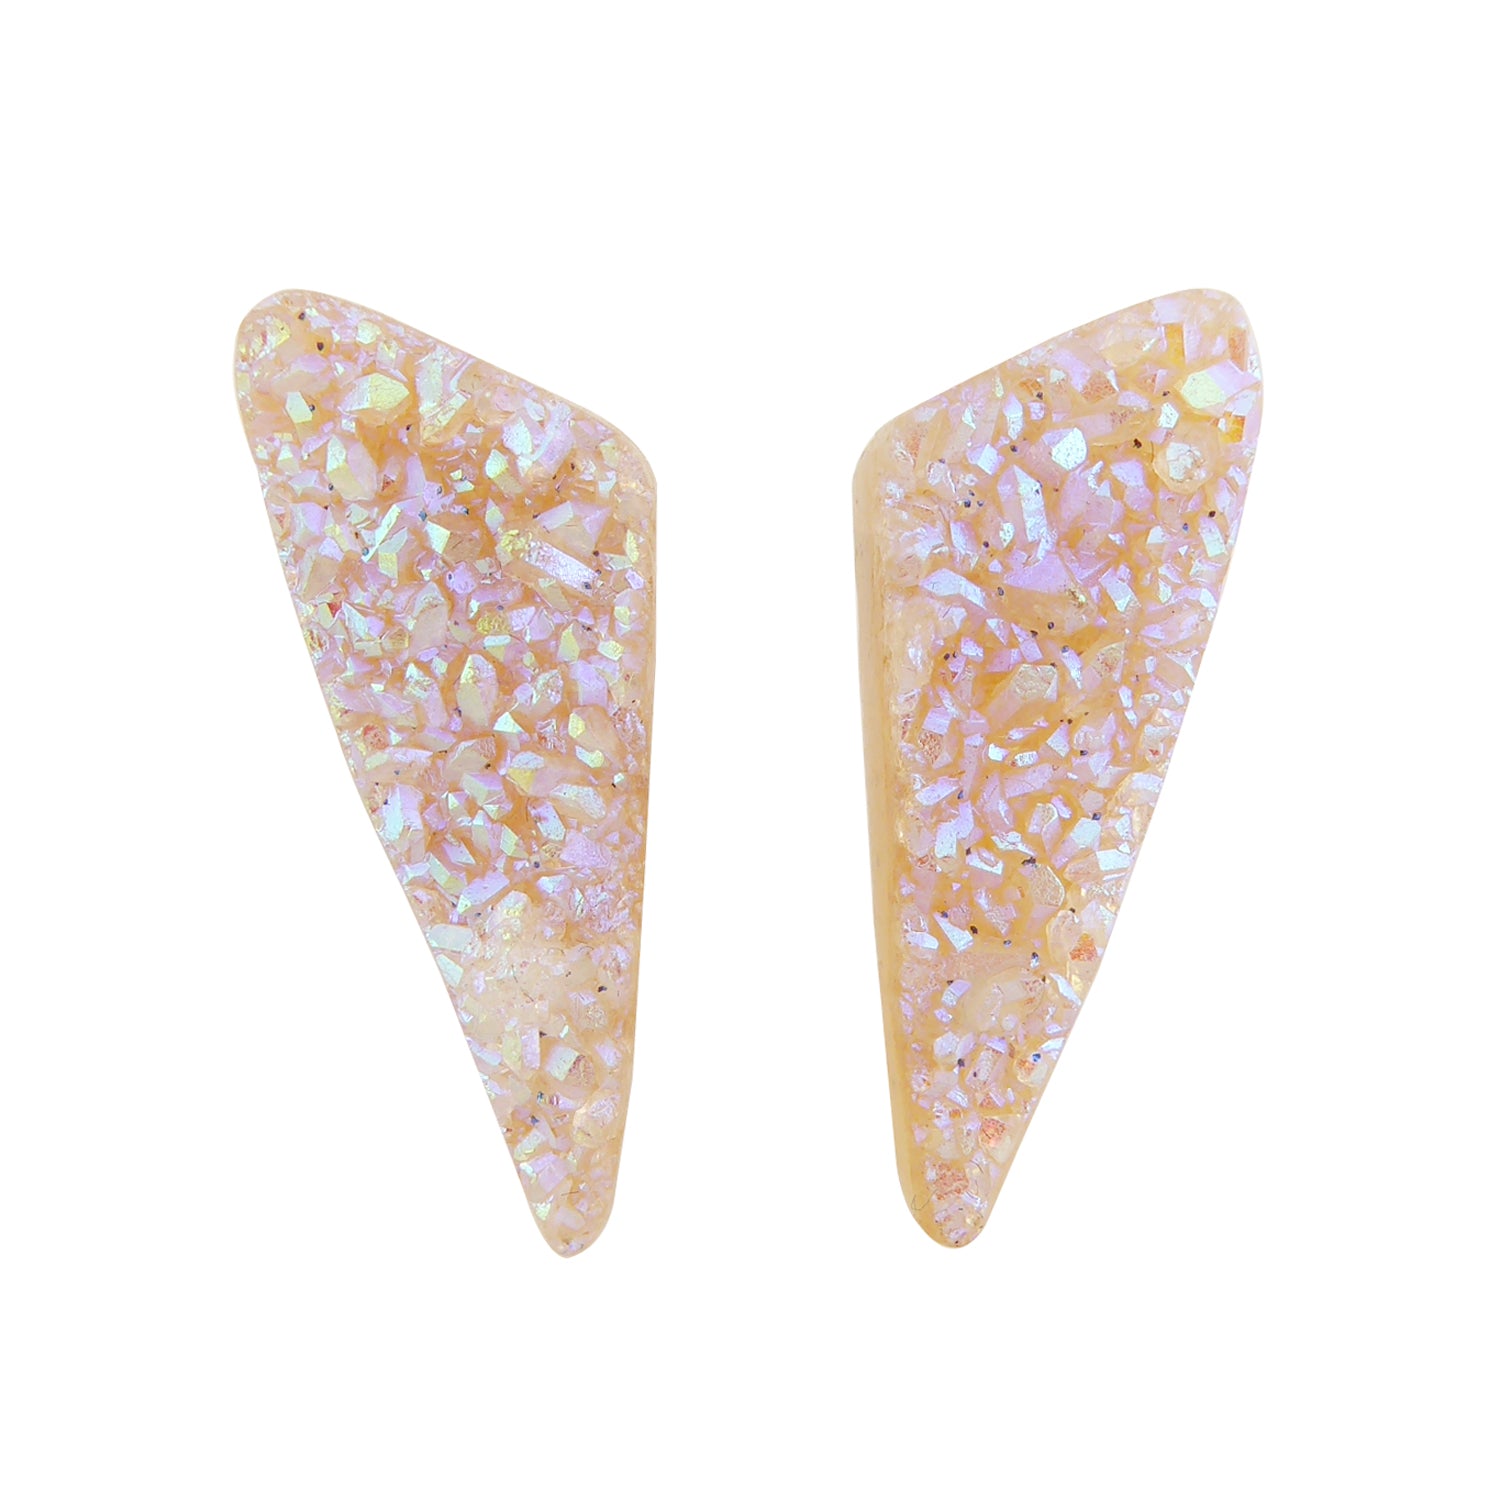 Aura quartz druzy stud earrings by Jenny Dayco 1